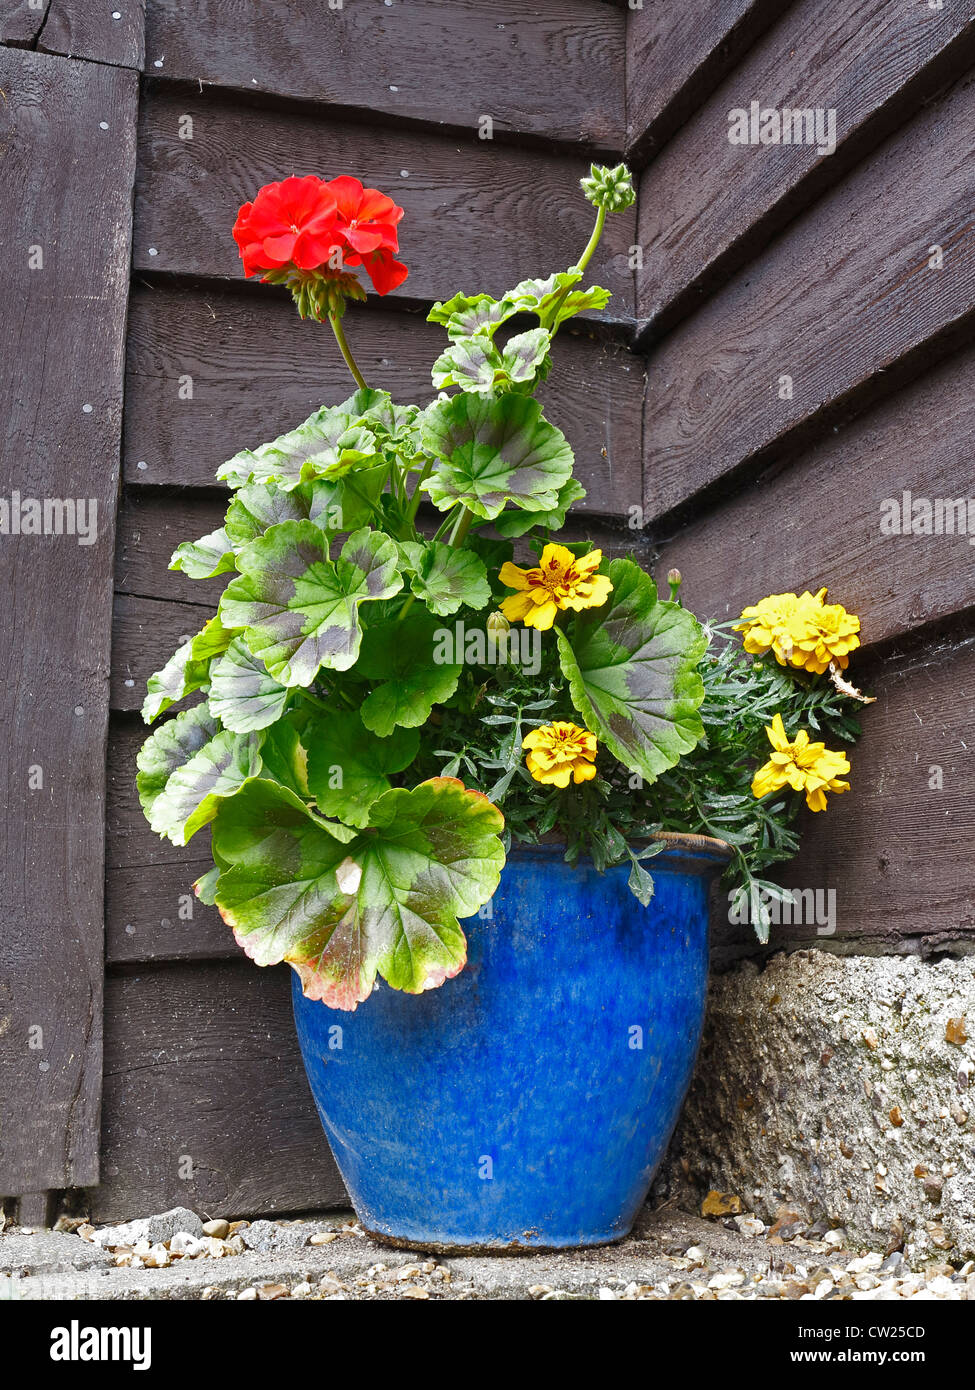 Red geranium in blue plant pot Stock Photo